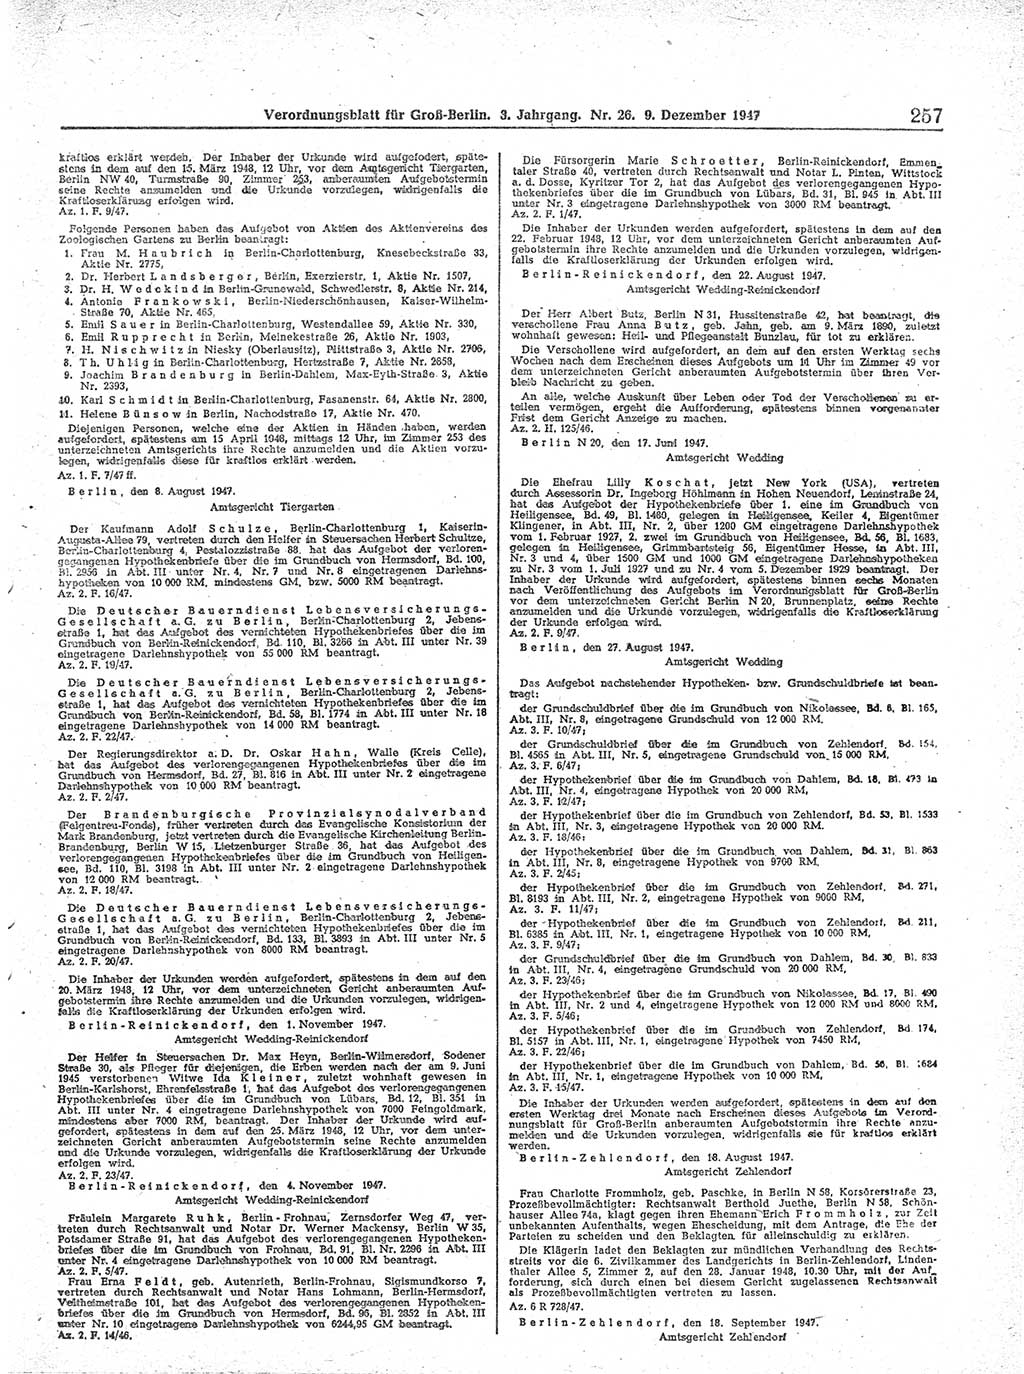 Verordnungsblatt (VOBl.) für Groß-Berlin 1947, Seite 257 (VOBl. Bln. 1947, S. 257)